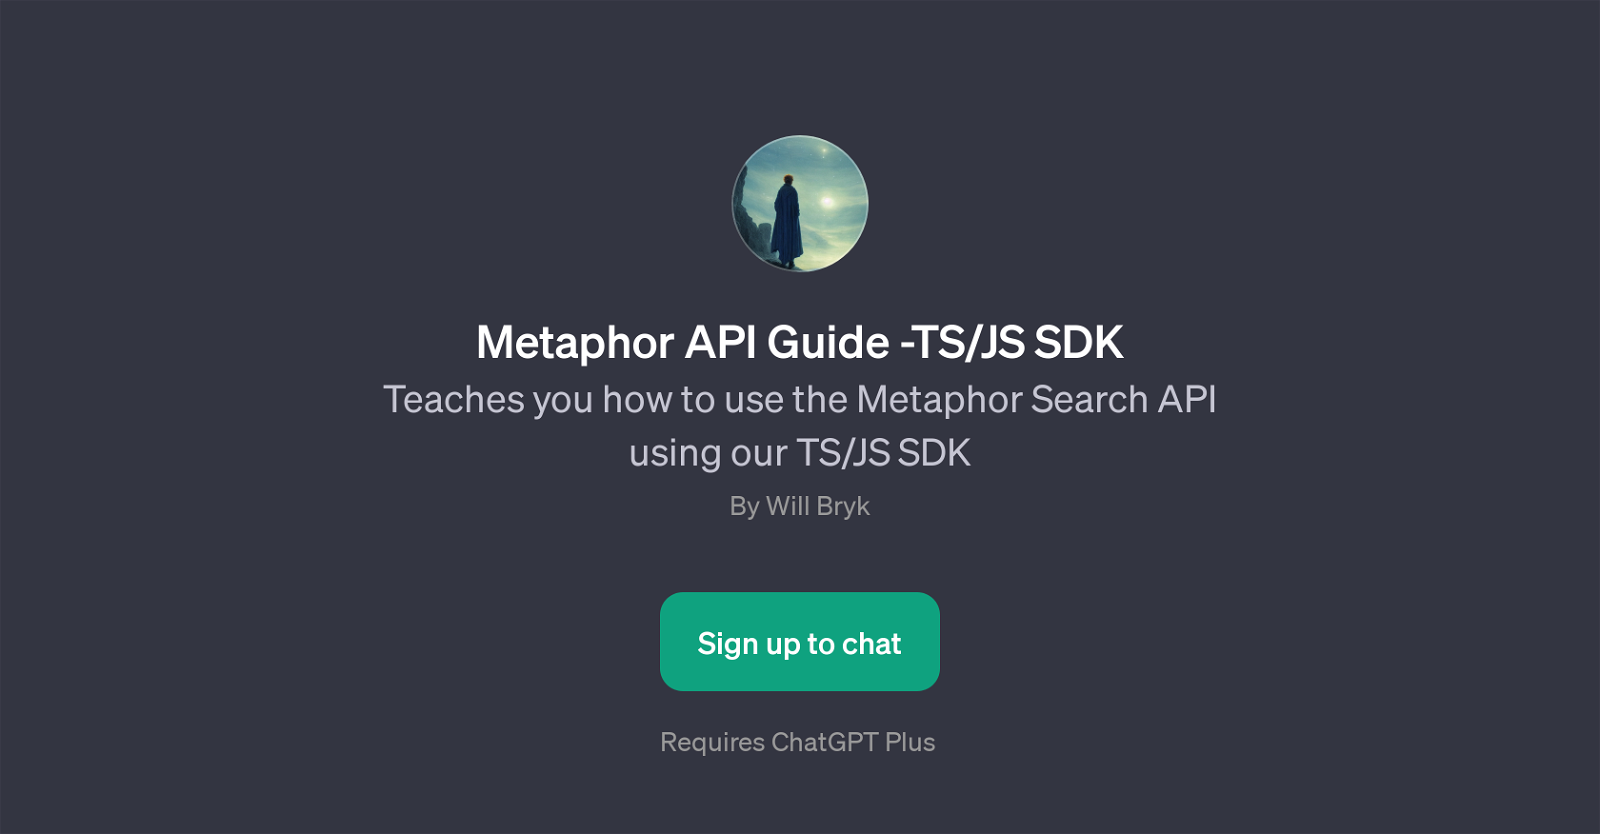 Metaphor API Guide - TS/JS SDK website